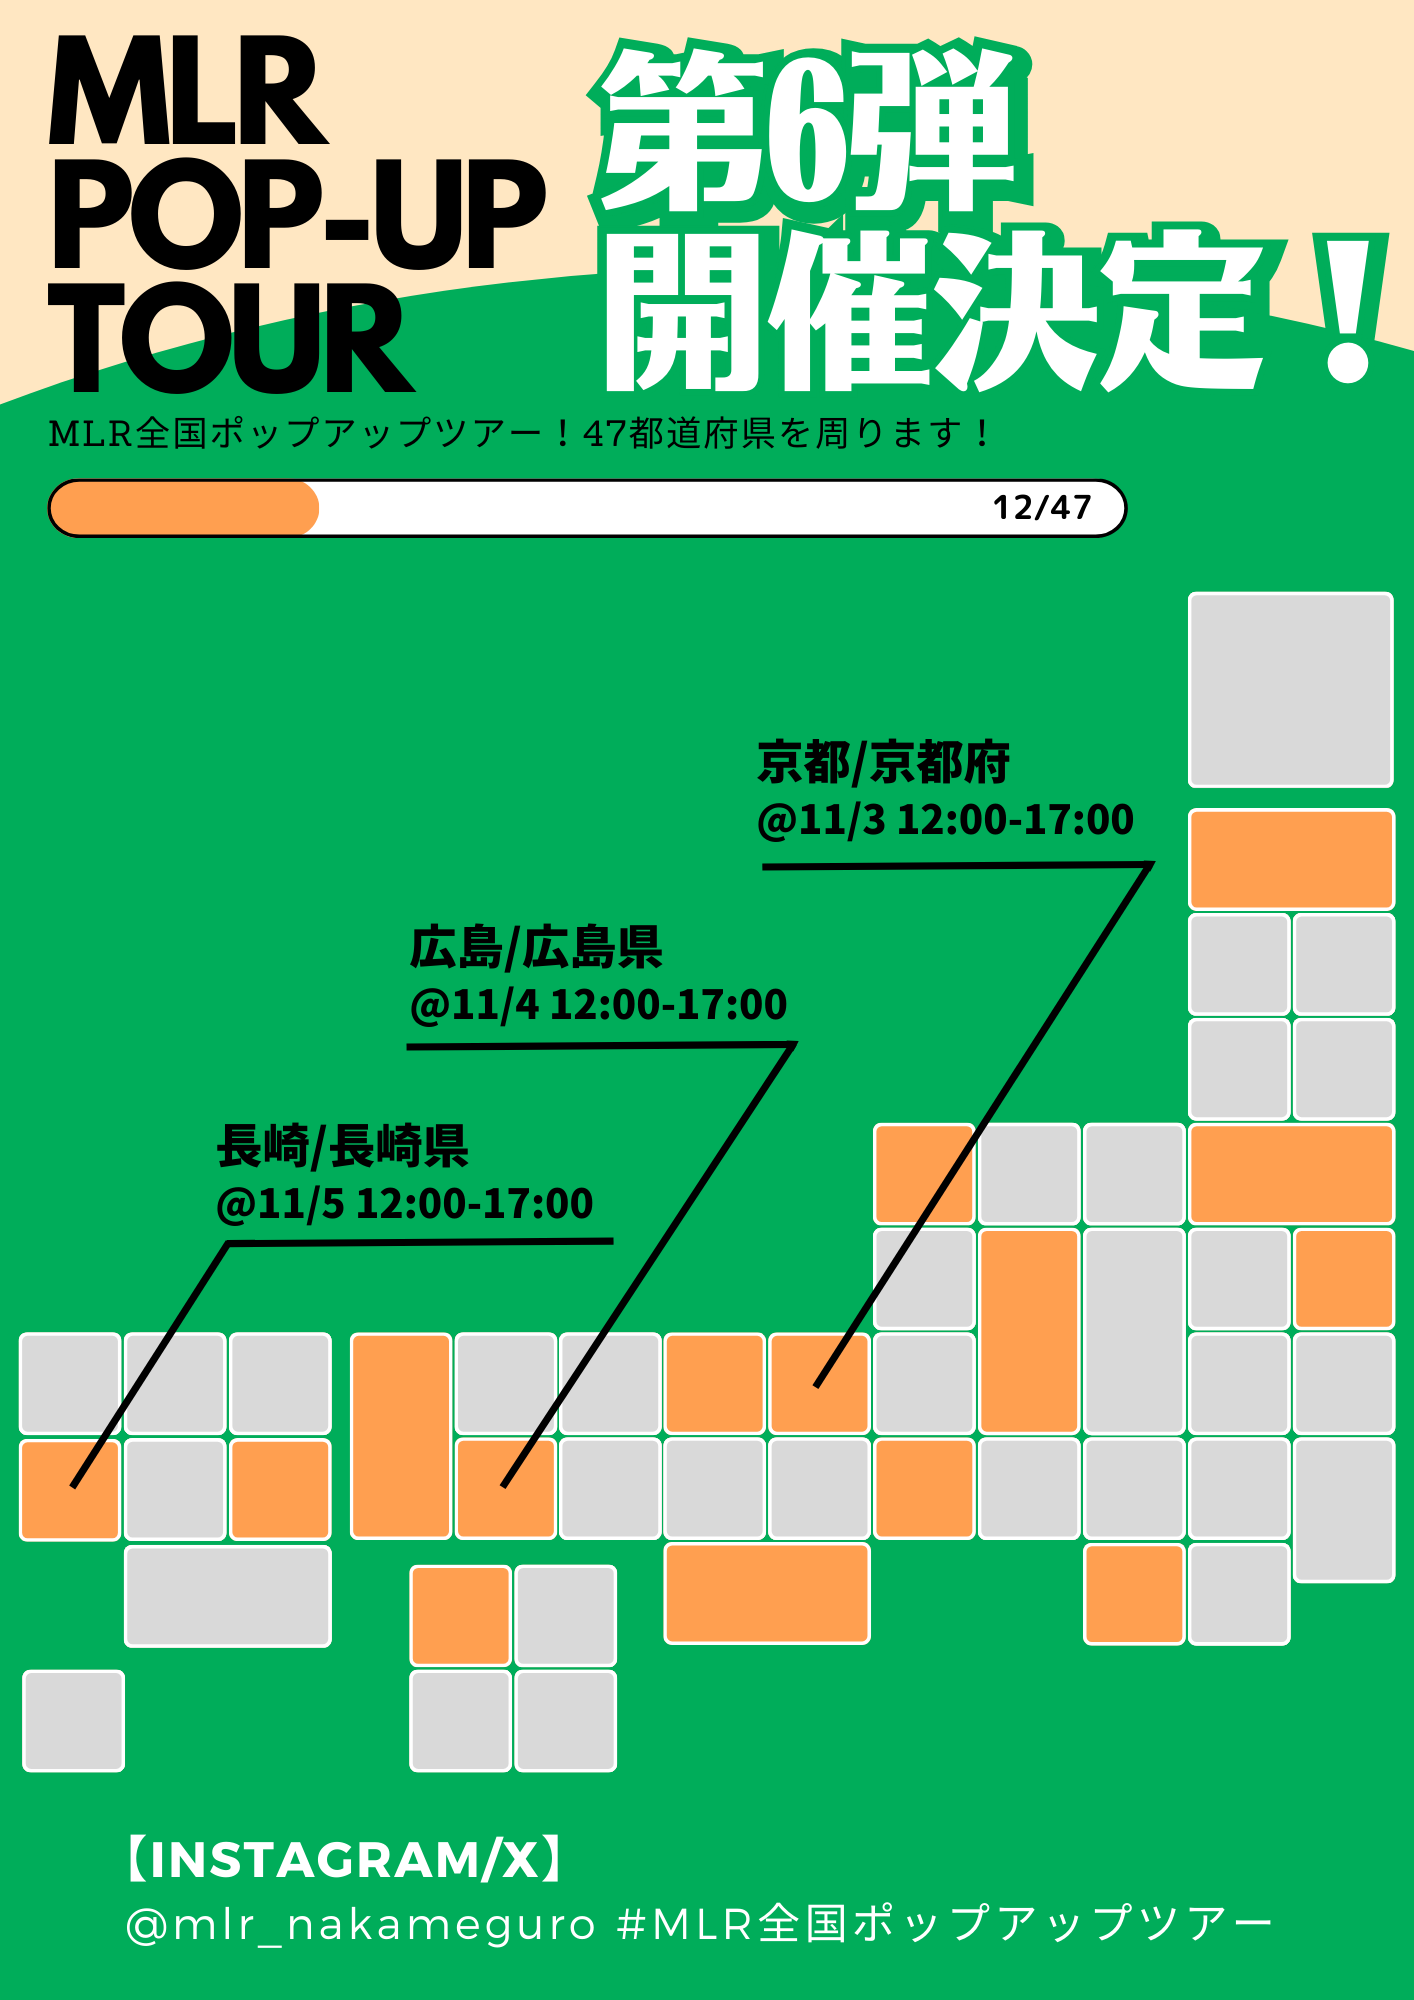 11/3(金･祝)4(土)5(日) MLR全国ポップアップツアー in 京都&広島&長崎 開催決定！